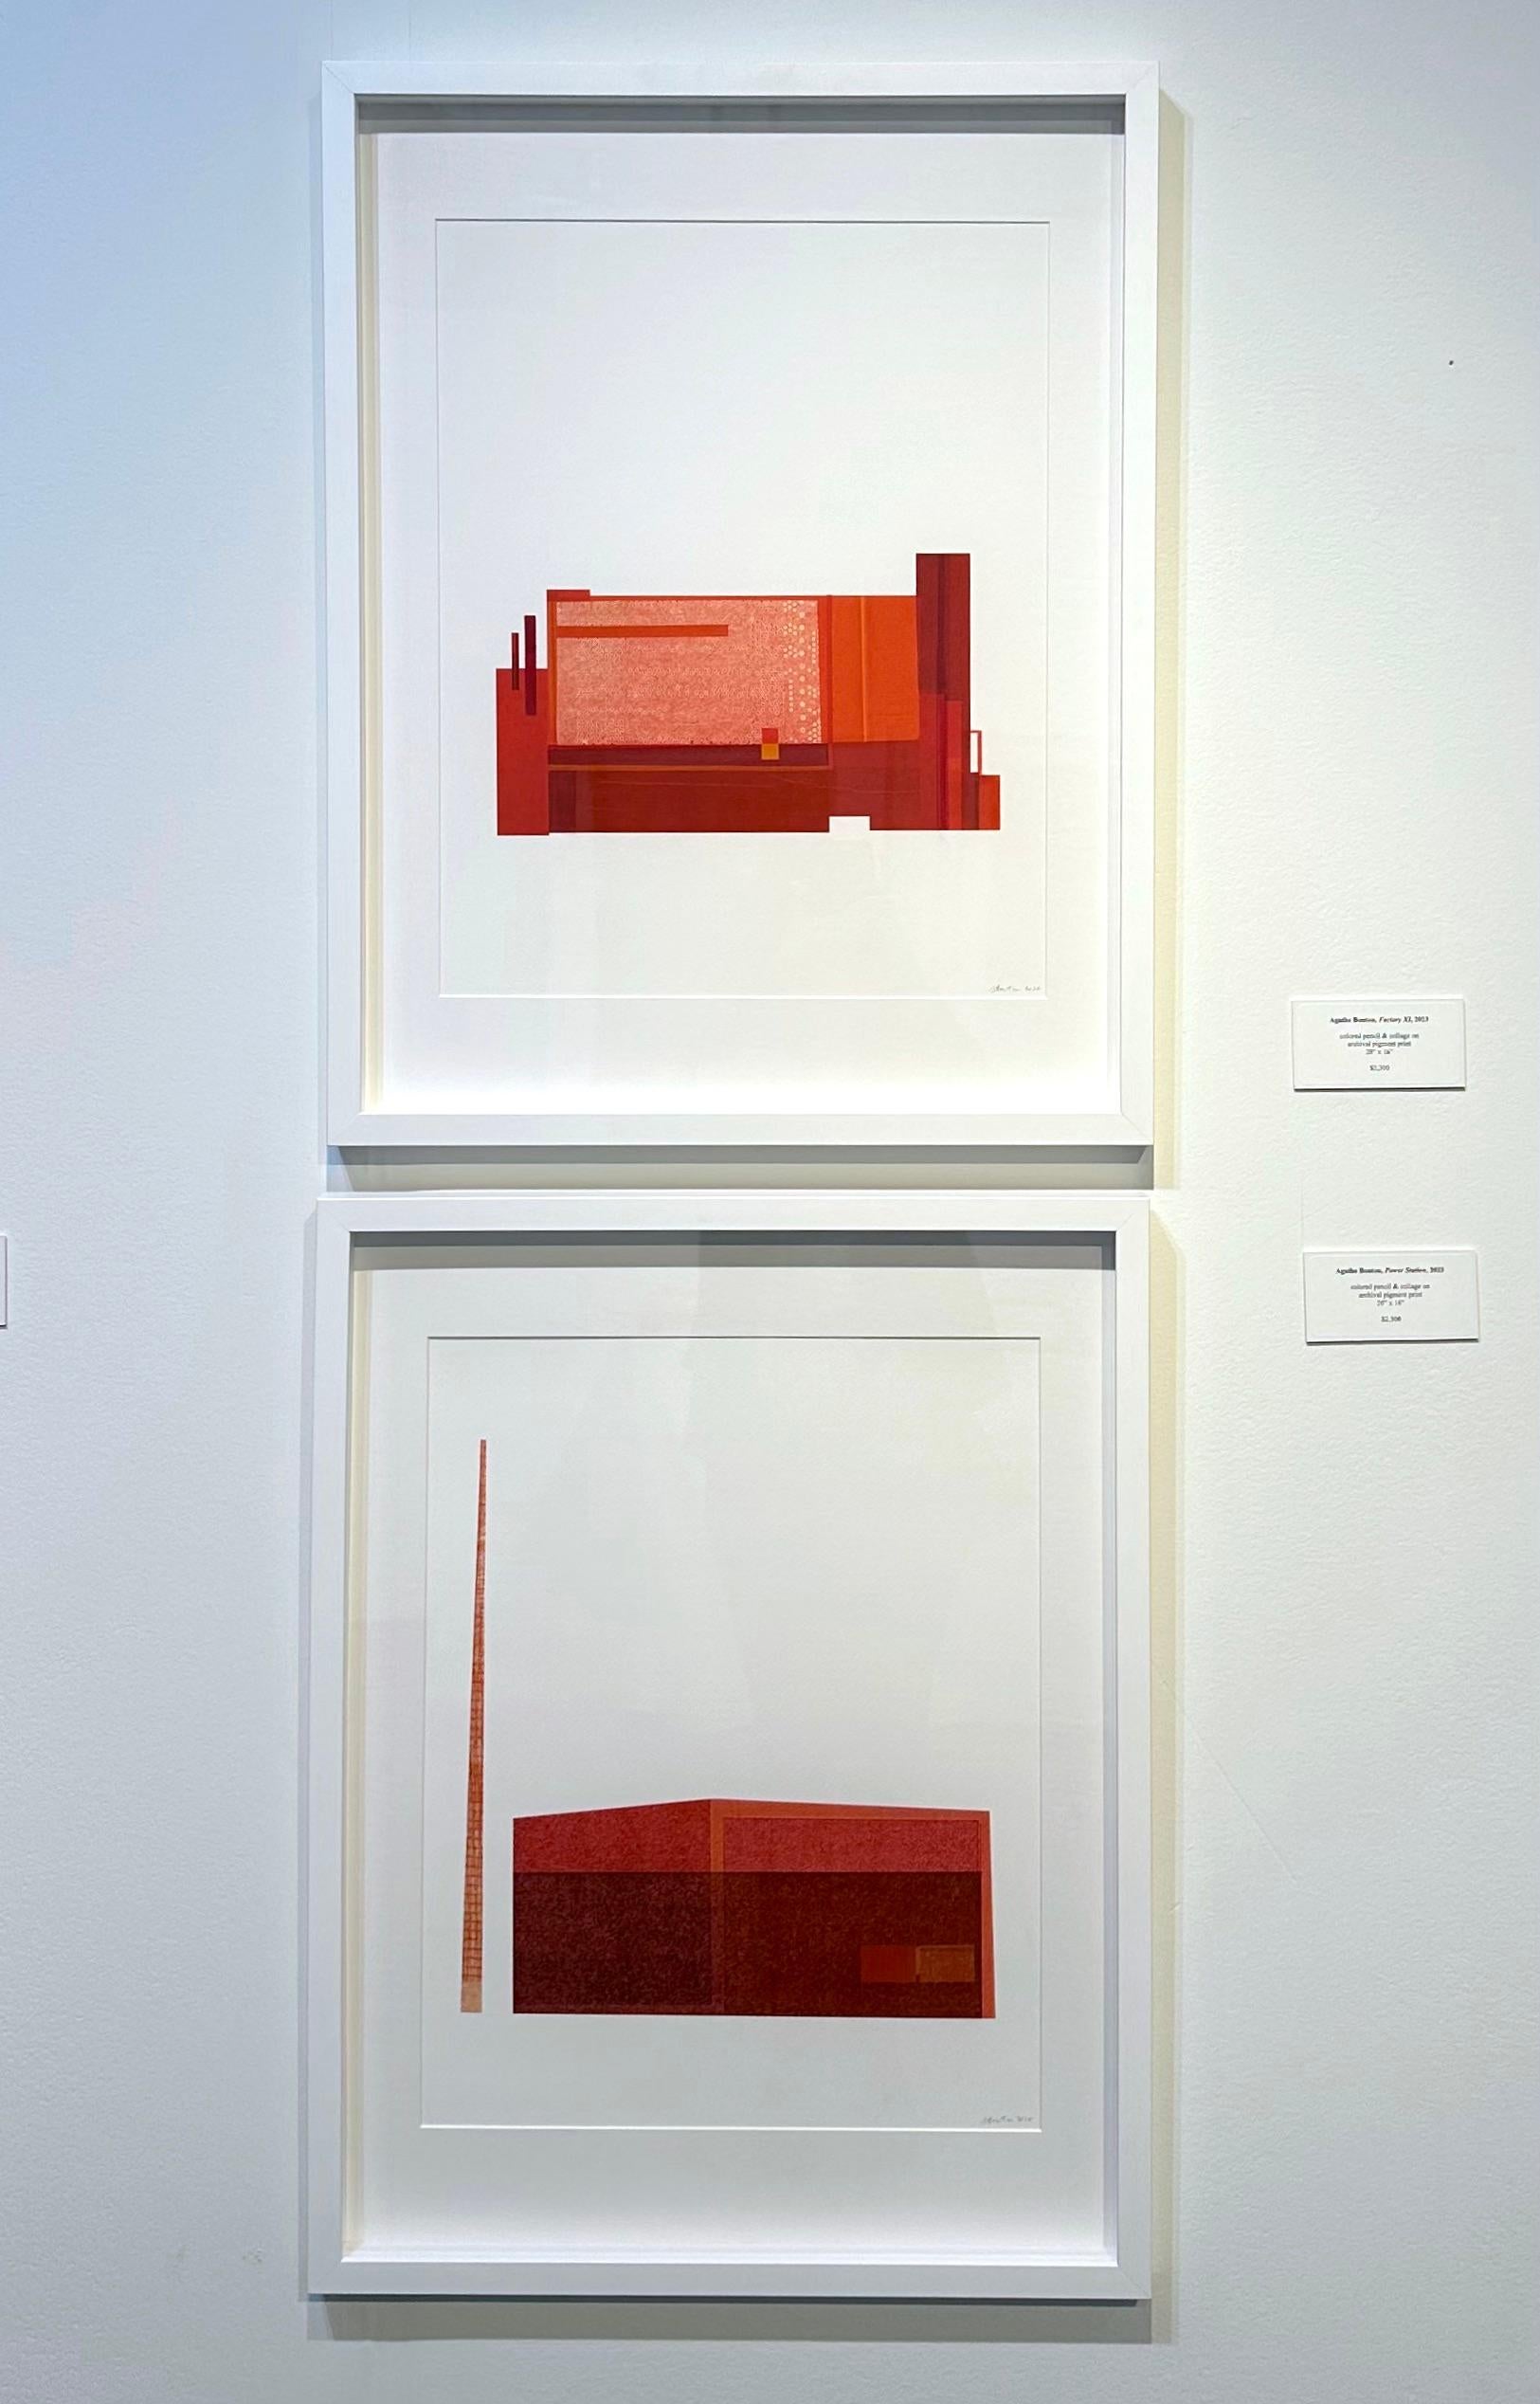 Power Station : collage d'architecture urbaine moderniste sur monoimpression en rouge, encadré en vente 1